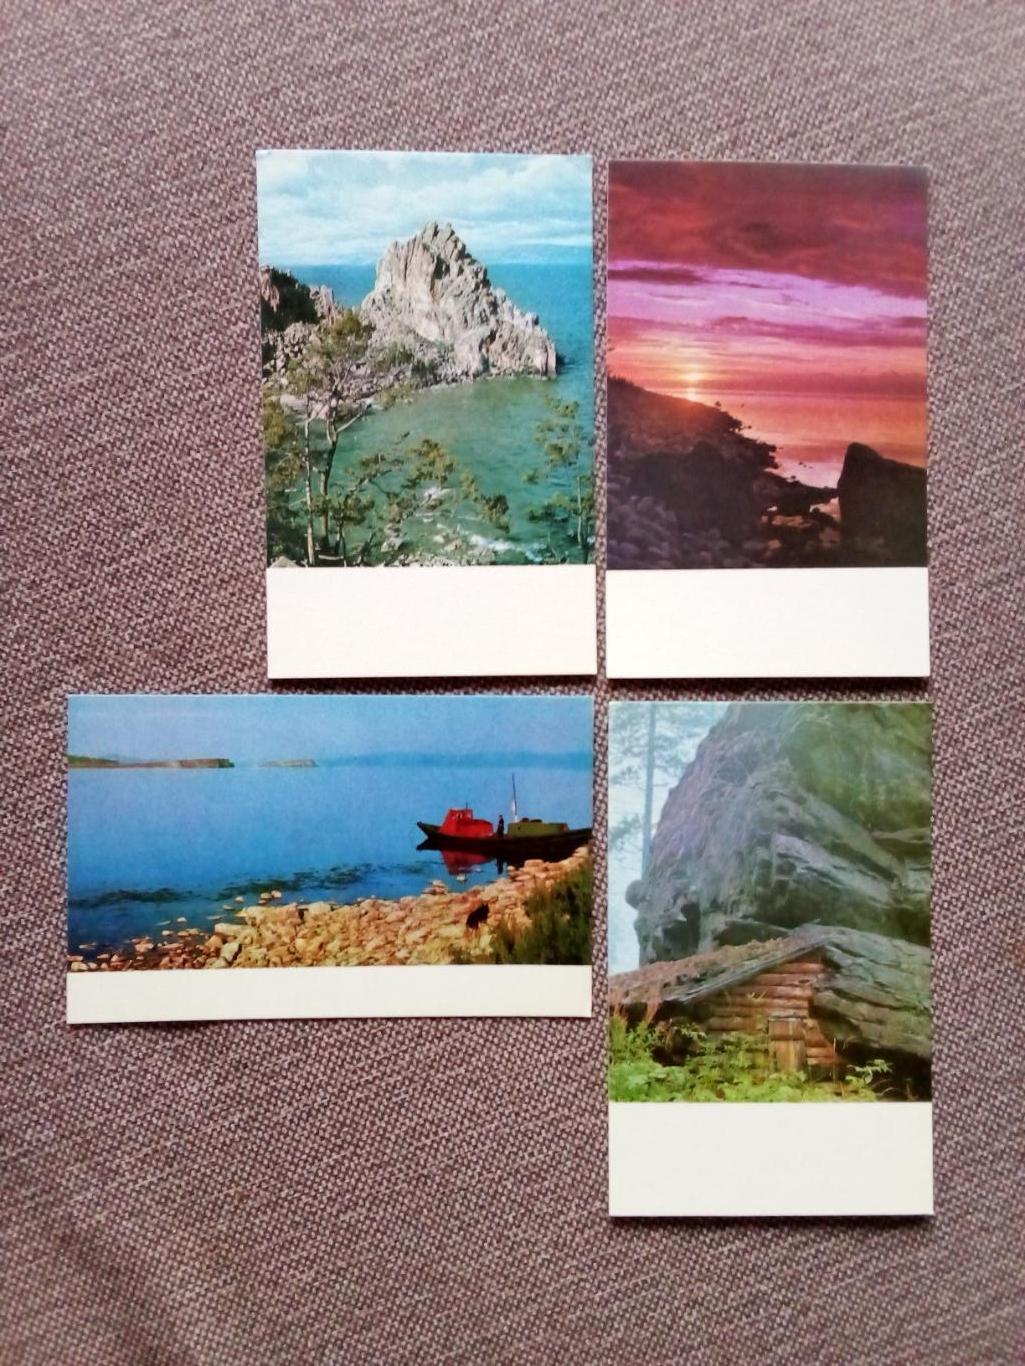 Памятные места СССР : Озеро Байкал 1971 г. полный набор - 15 открыток (чистые) 4